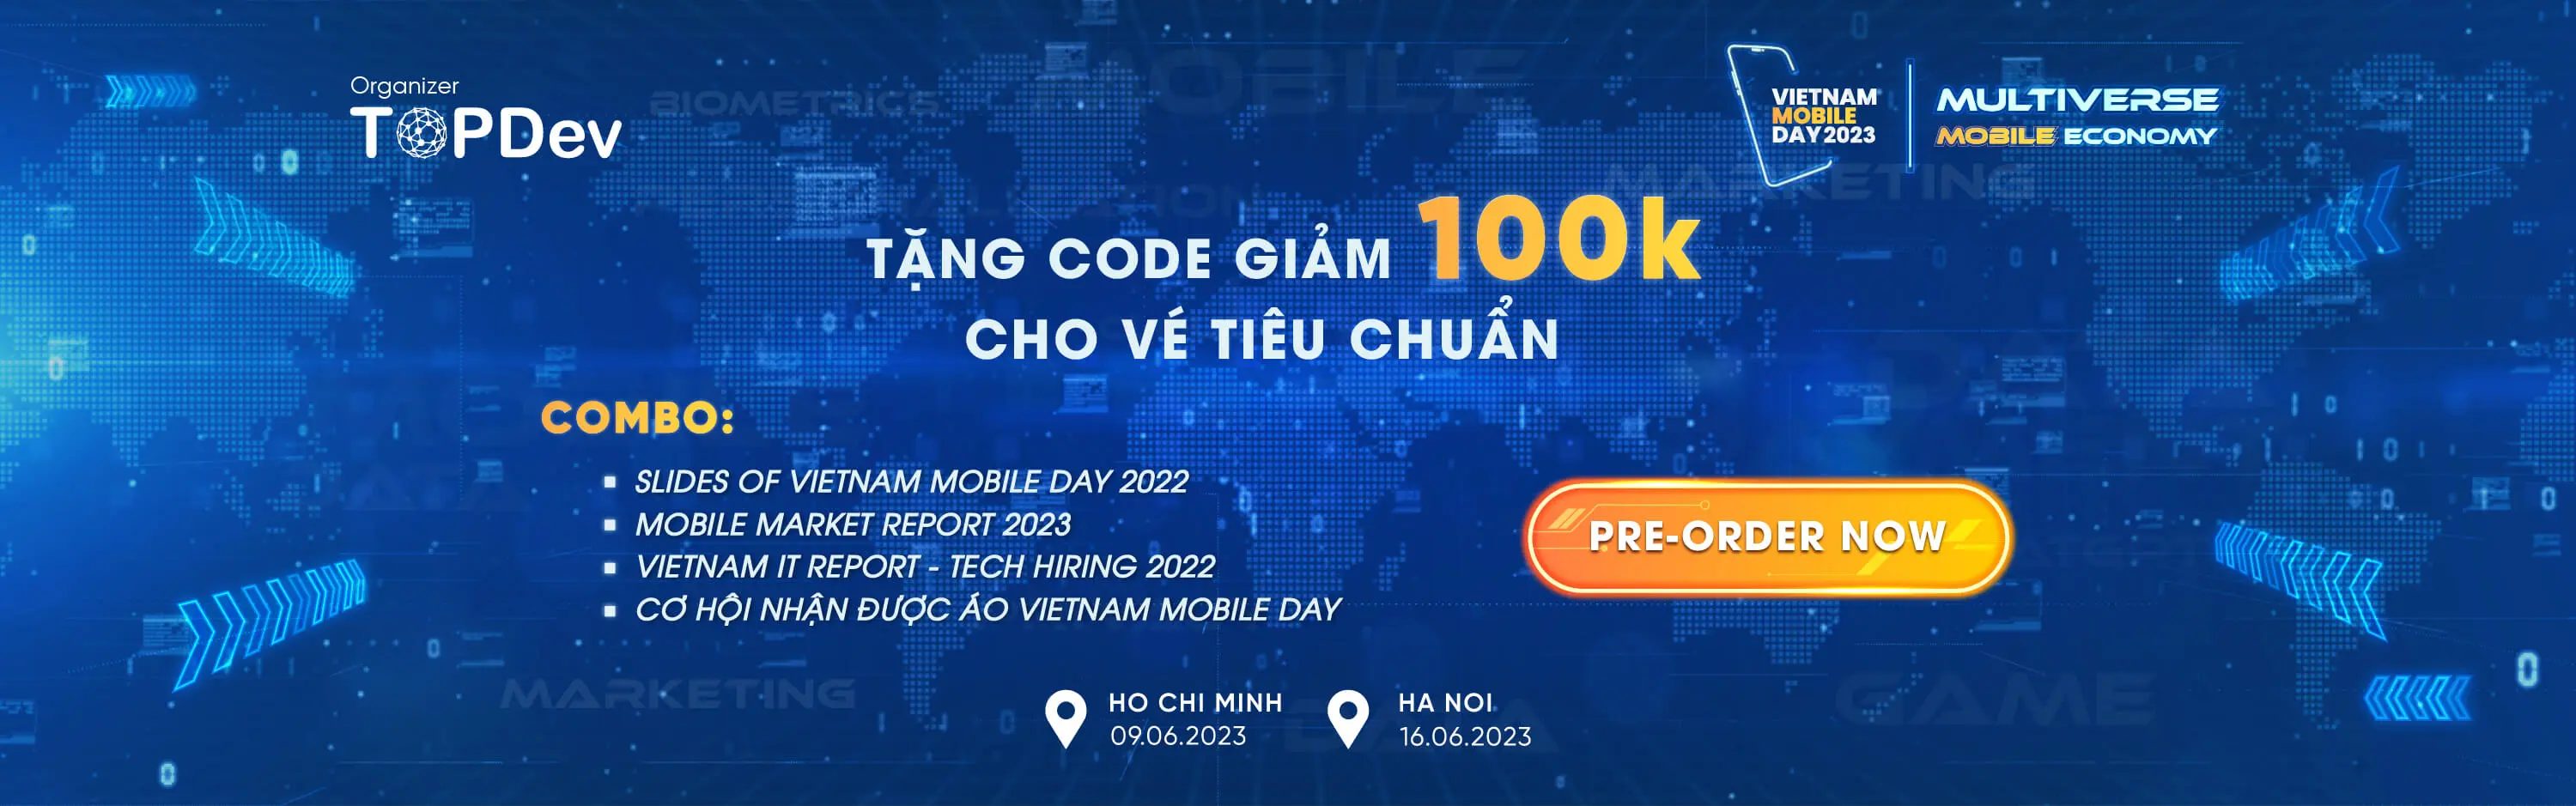 Vietnam mobileday 2023